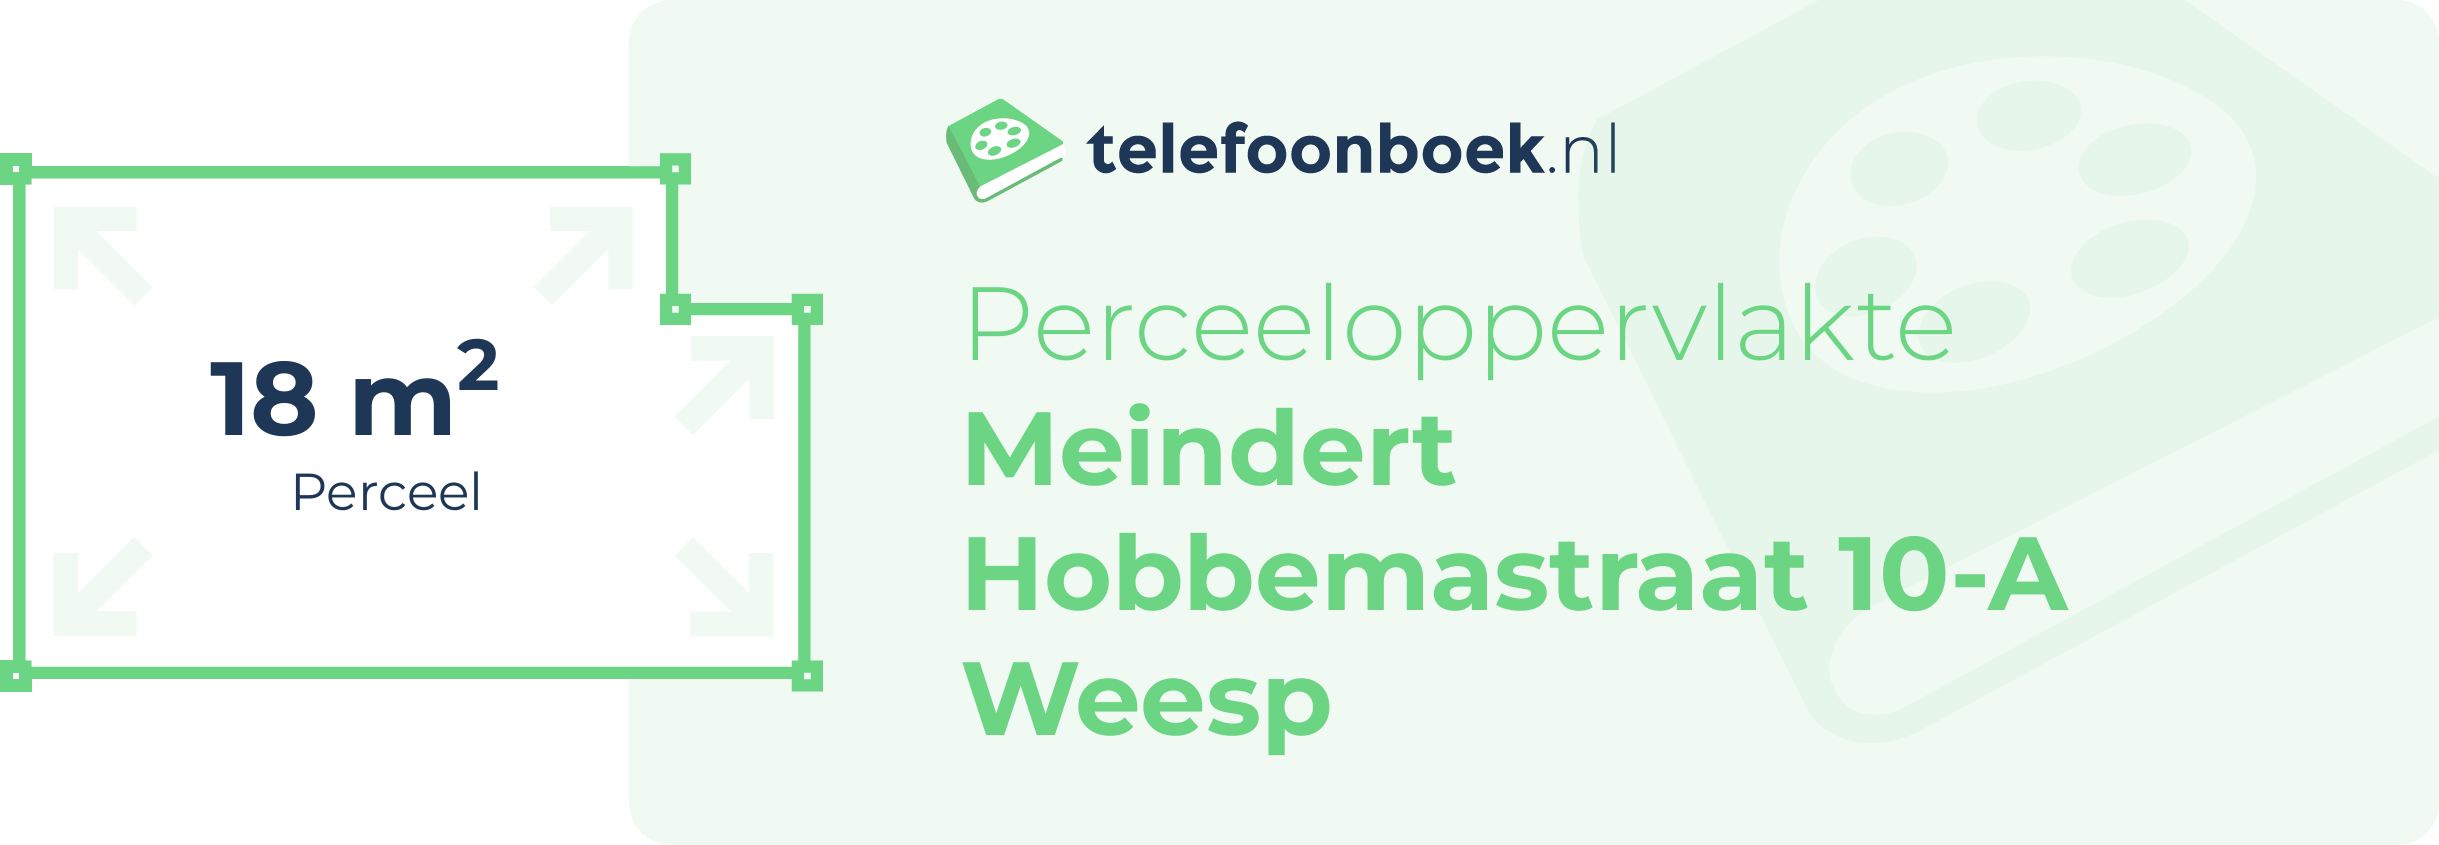 Perceeloppervlakte Meindert Hobbemastraat 10-A Weesp